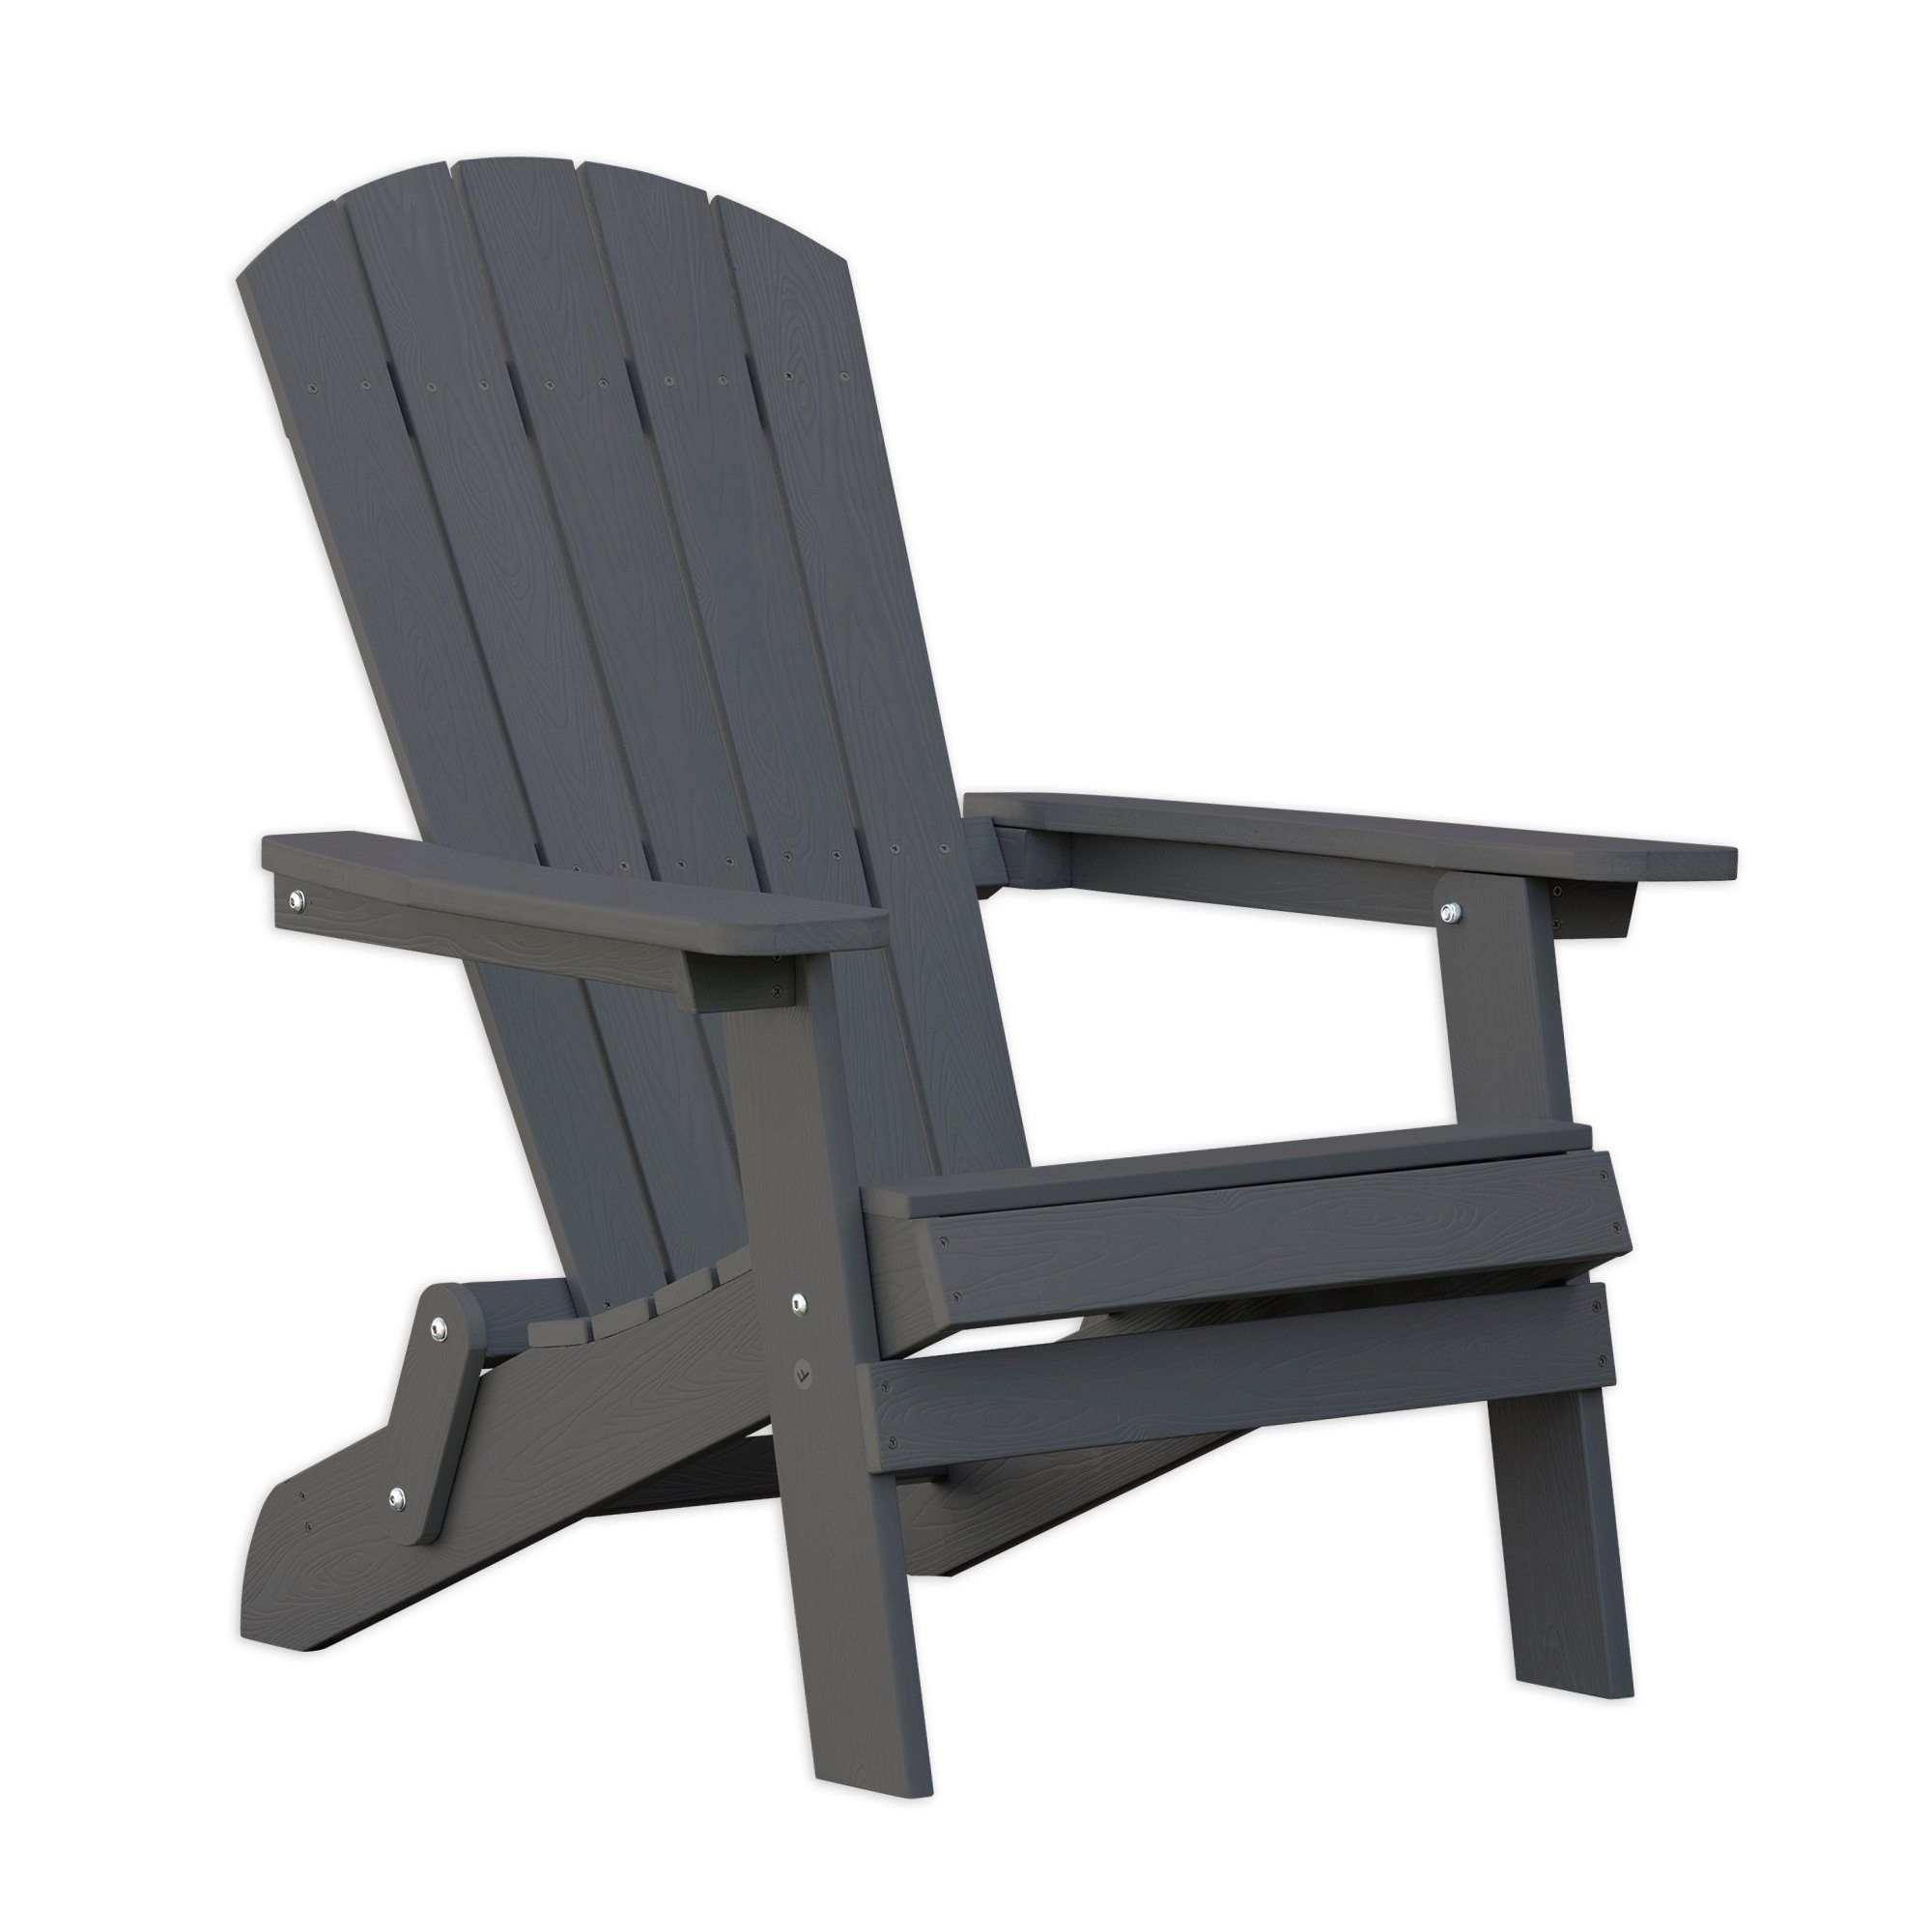 Endorphin Stuhl ® Adirondack Gartenstuhl/Sessel klappbar aus WPC Verbundstoff (kein Set) | Stühle